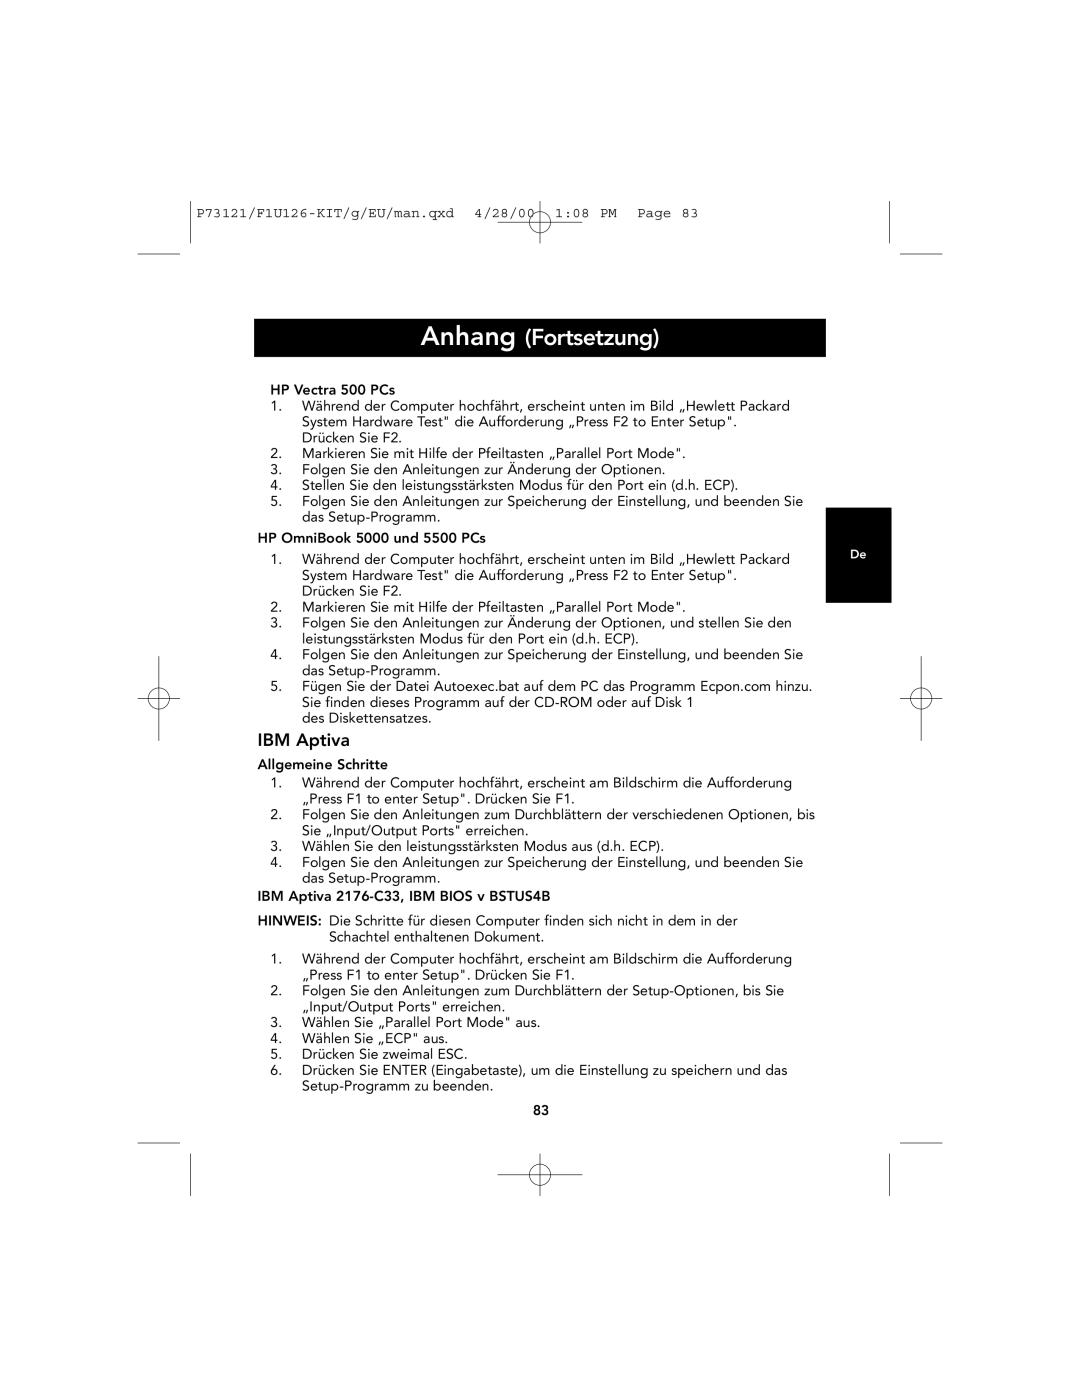 Belkin F1U126-KIT, P73121 user manual Anhang Fortsetzung, IBM Aptiva 